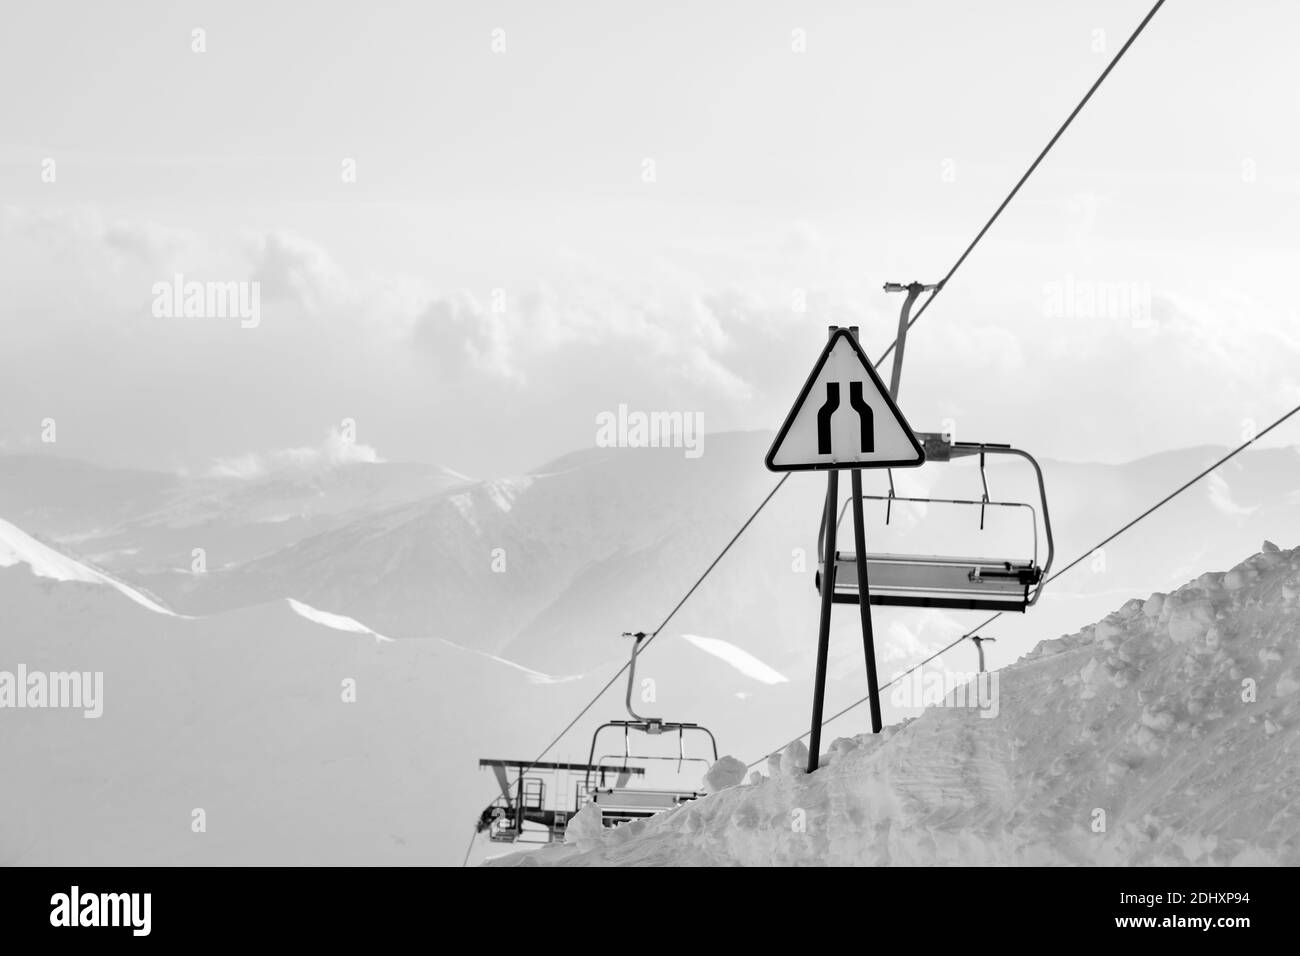 Avertissement signalisation routière rocade, télésiège et hautes montagnes enneigées dans le brouillard en arrière-plan. Montagnes du Caucase en soirée d'hiver. Géorgie région Gudau Banque D'Images